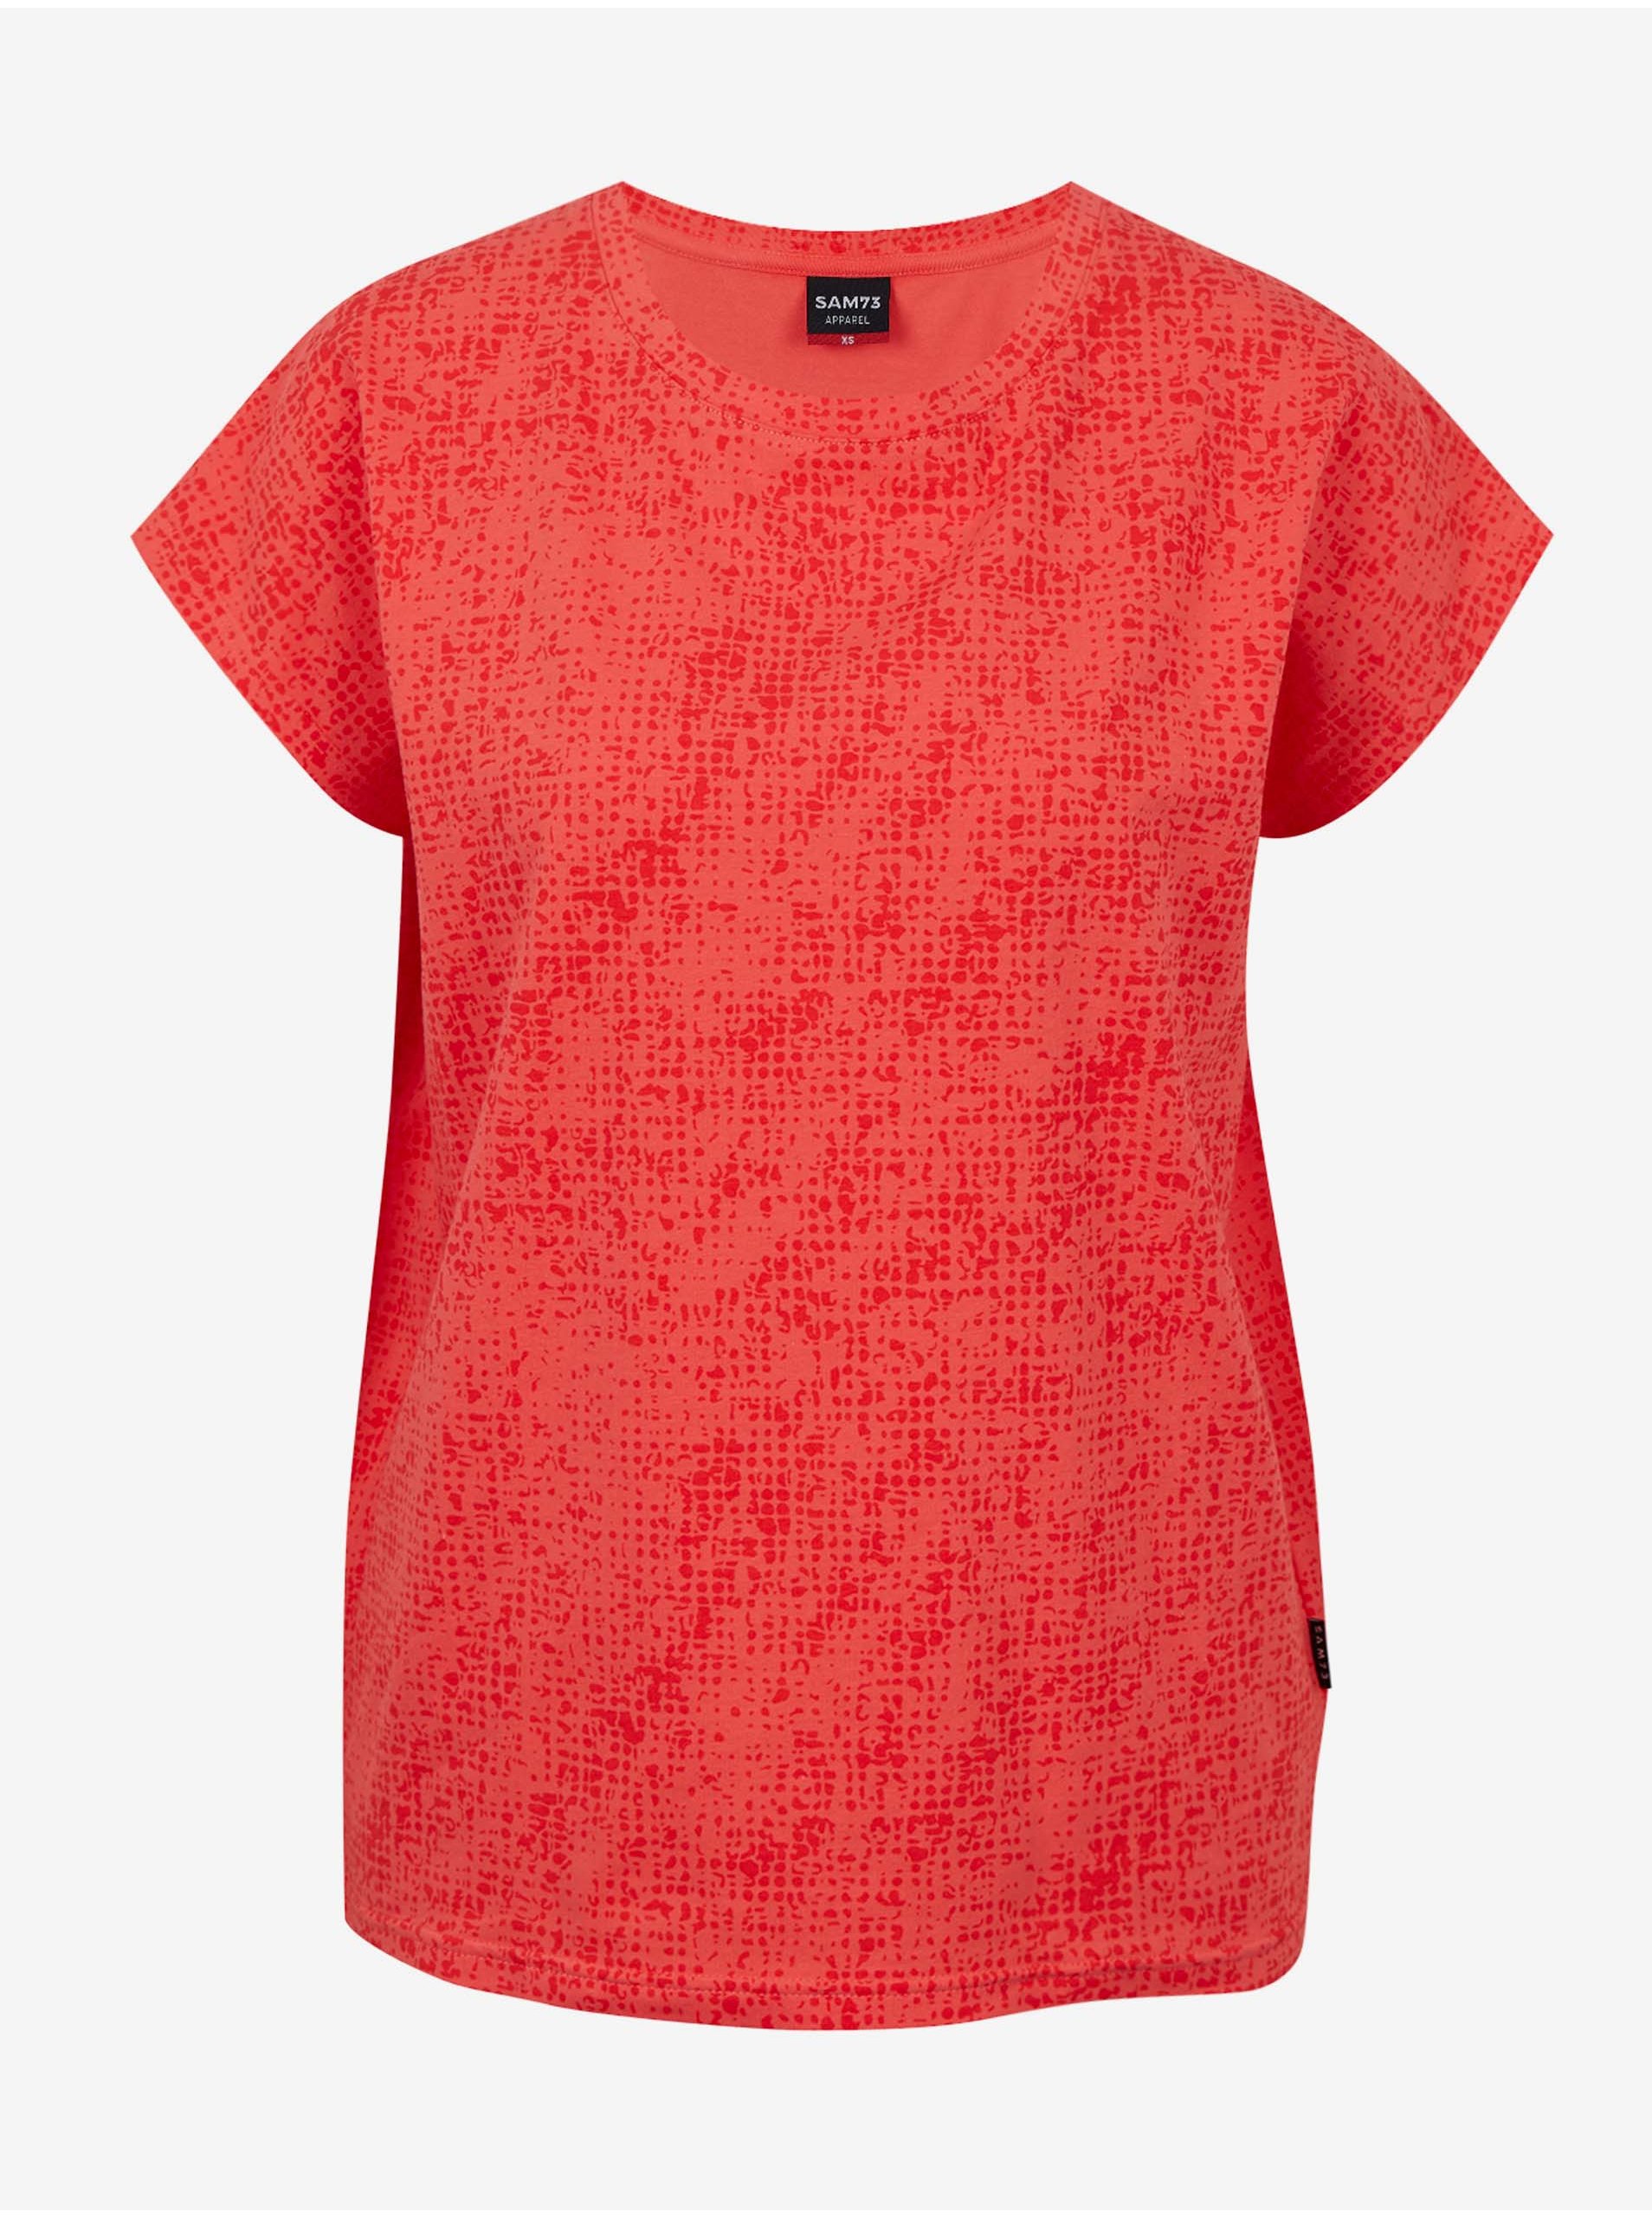 E-shop Koralové dámske vzorované tričko SAM 73 Veronica